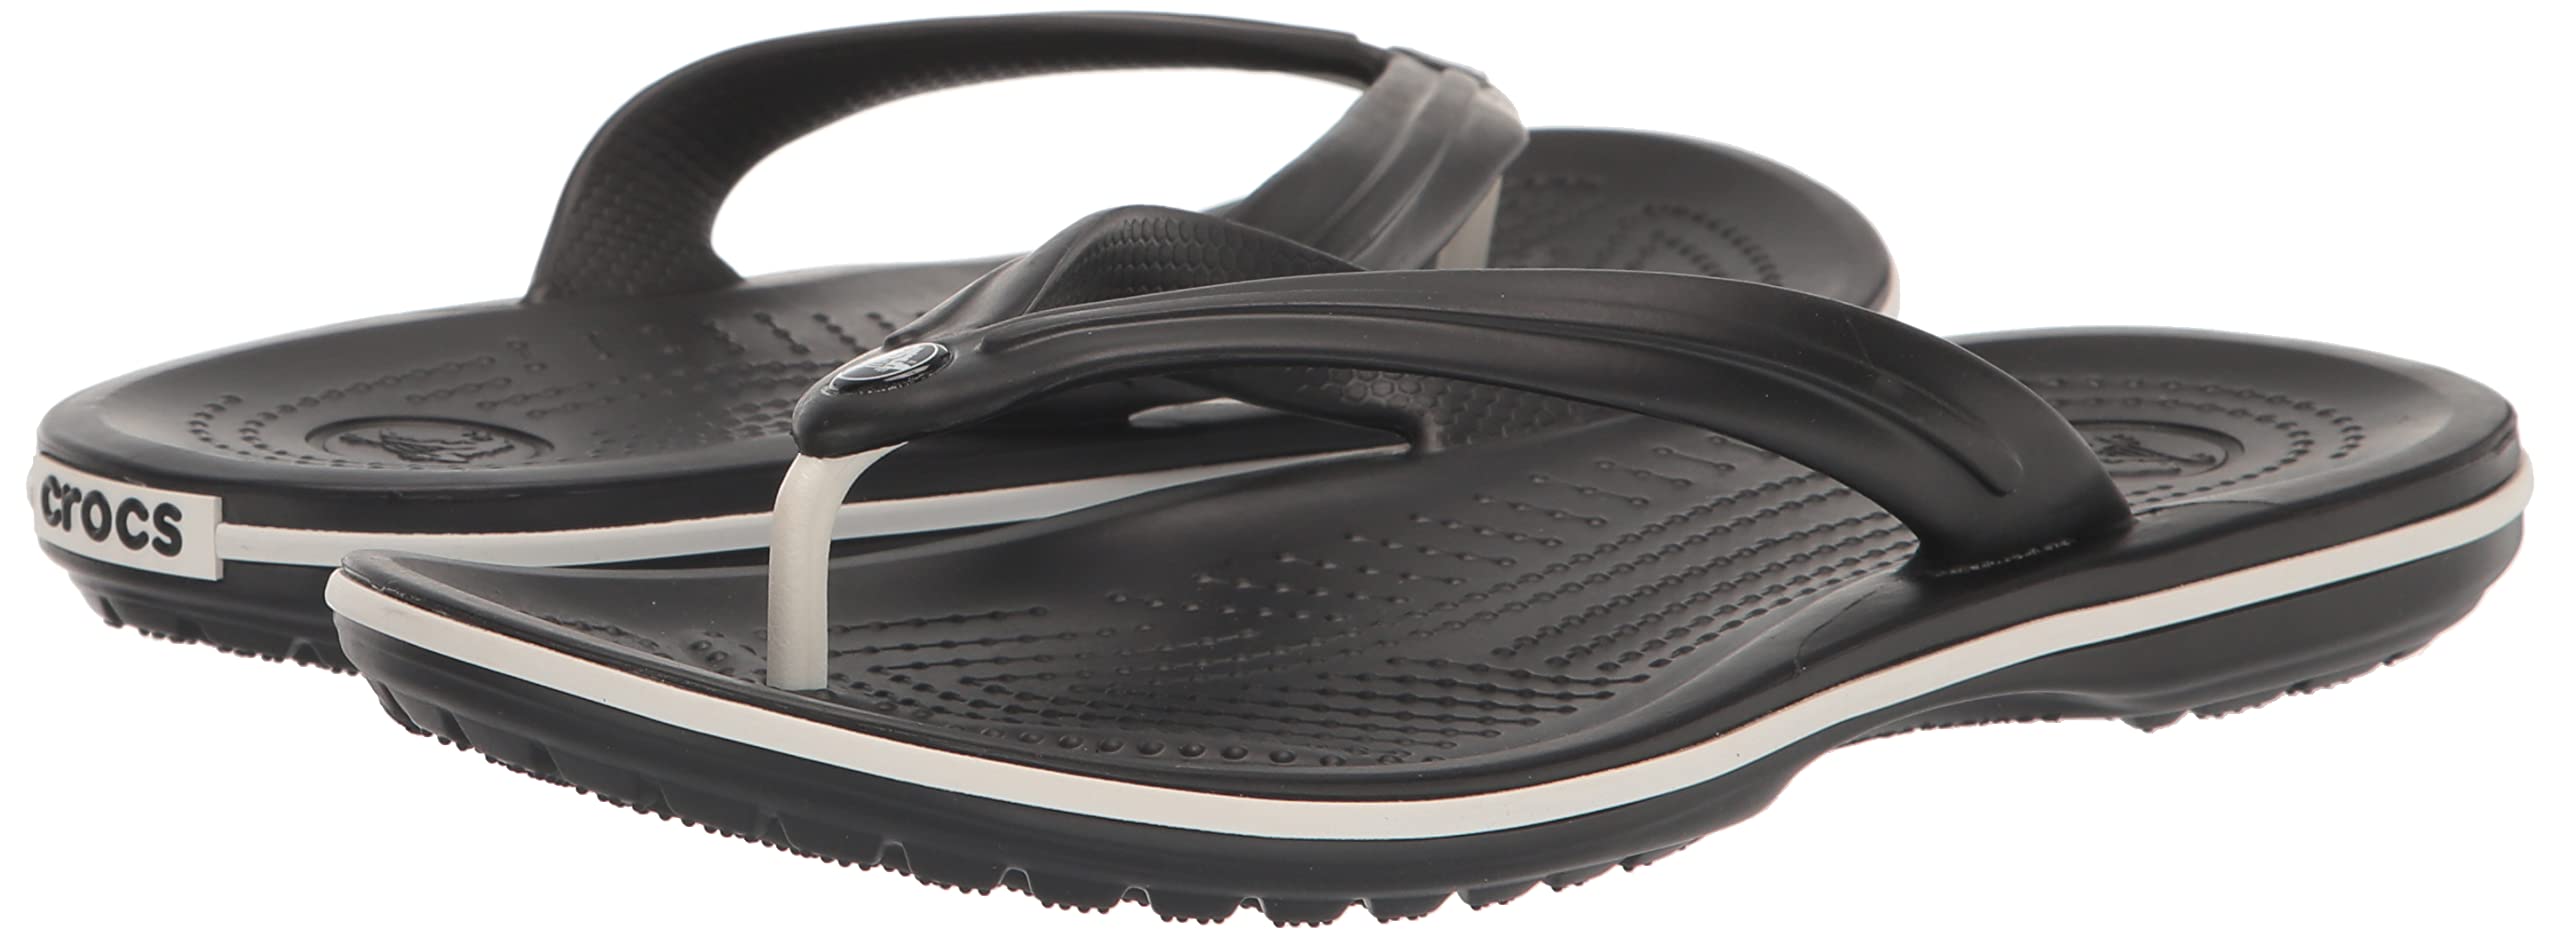 Crocs Unisex Crocband Flip Flops, Black, 6 Men/8 Women